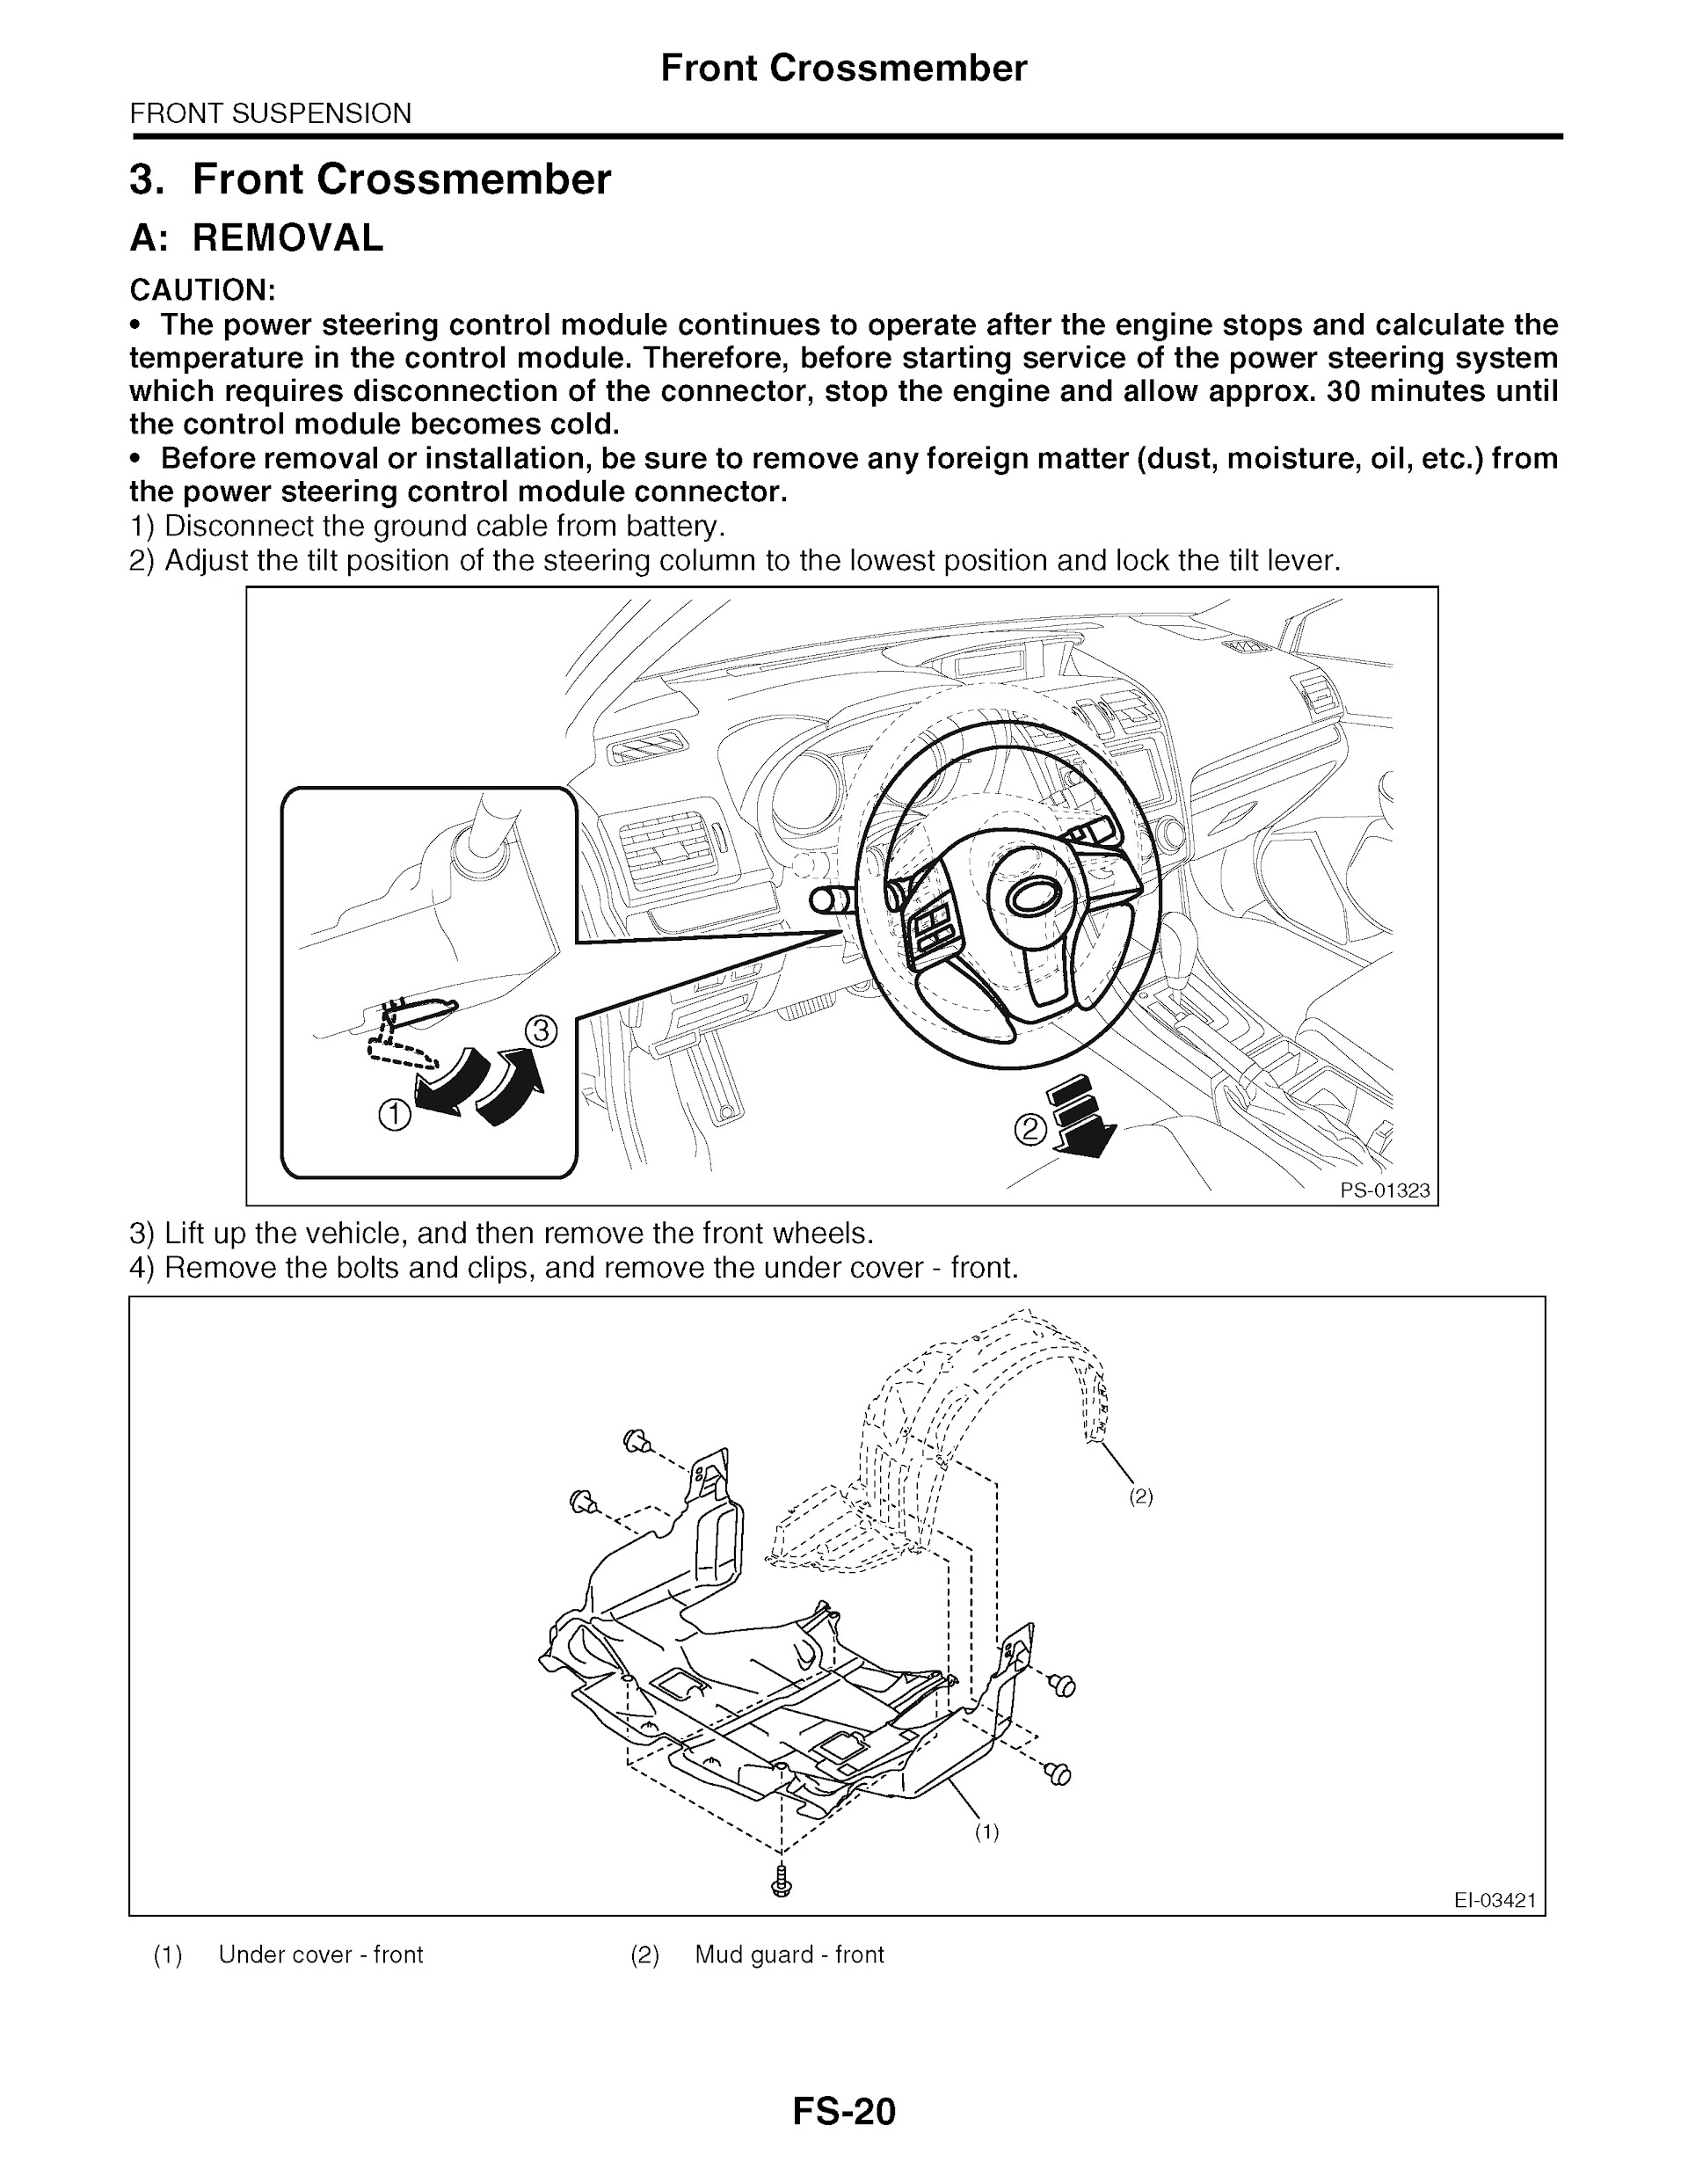 2013 Subaru Impreza & XV Crosstrek Repair Manual, Front Suspension